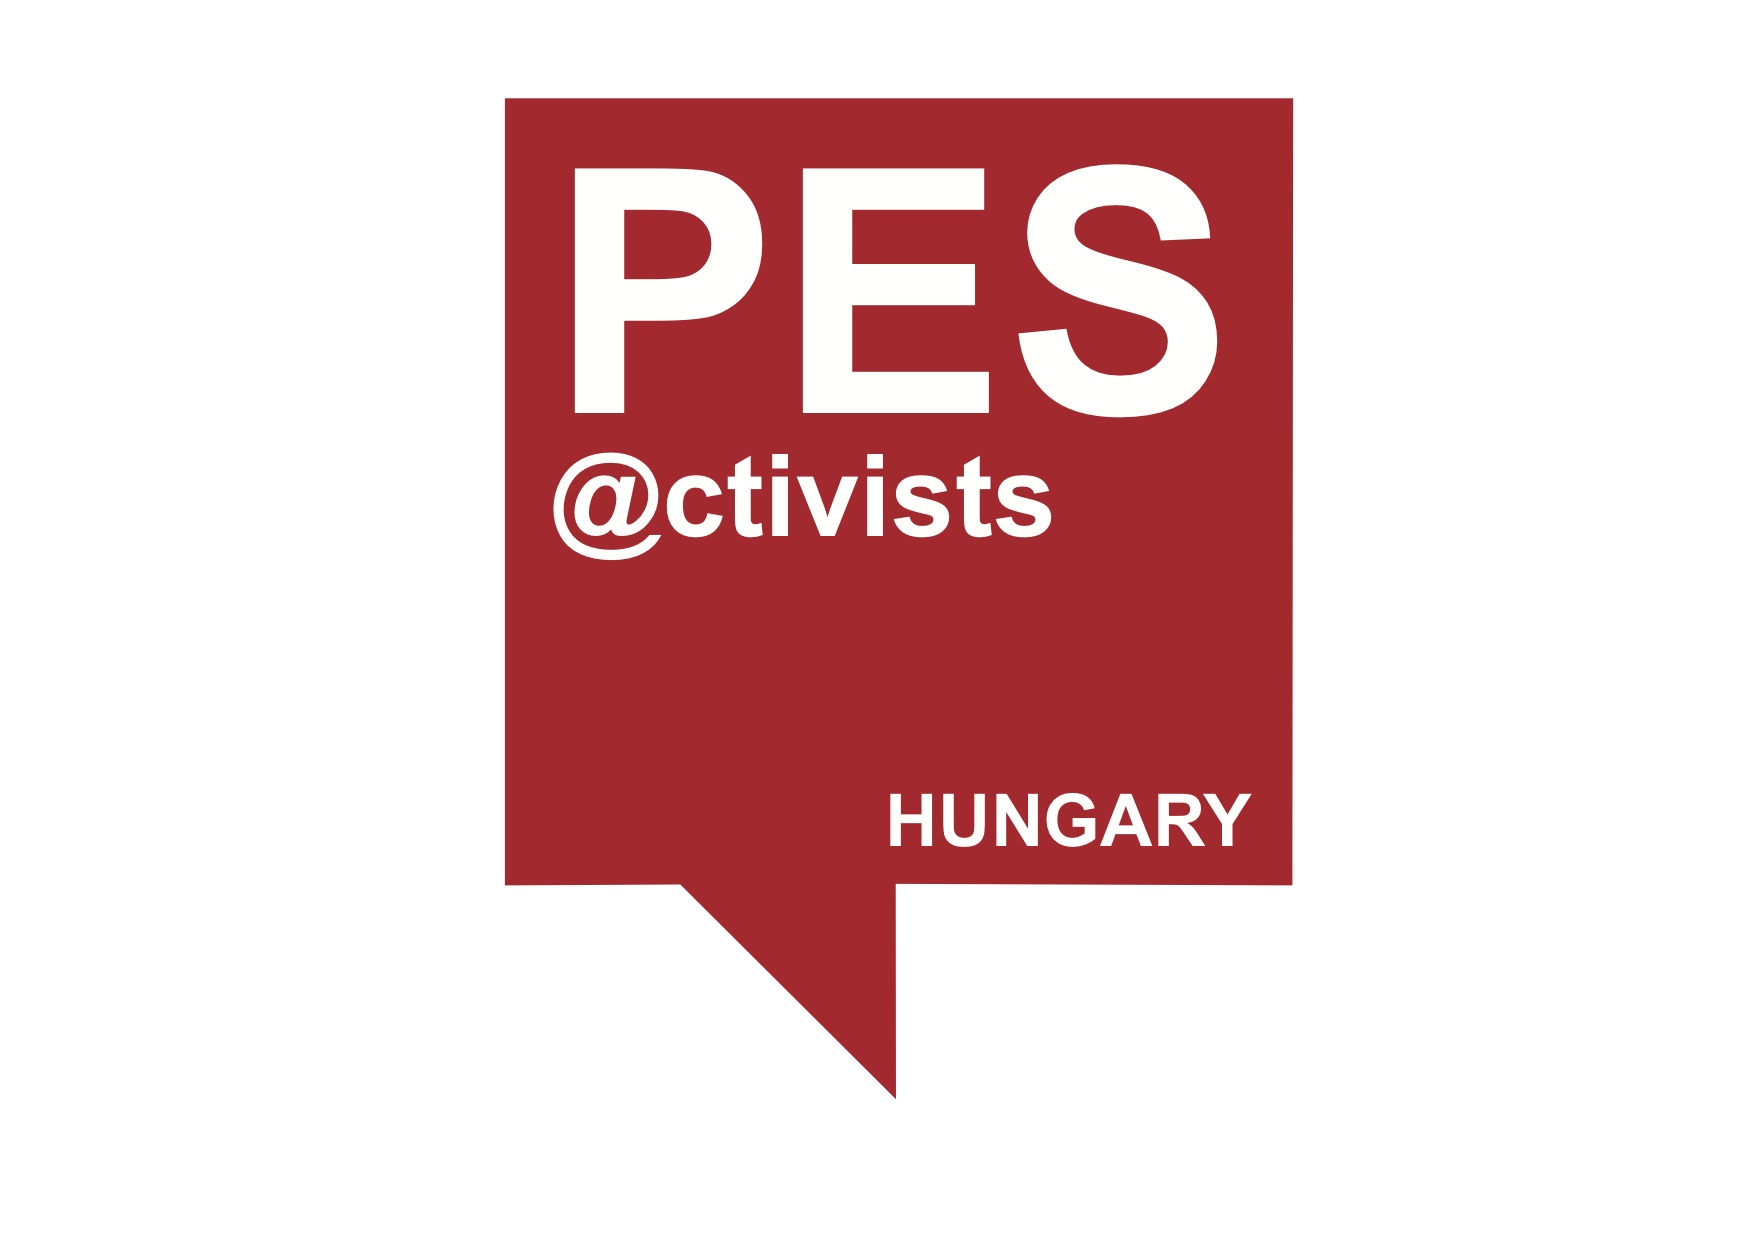 PES activists Hungary logo